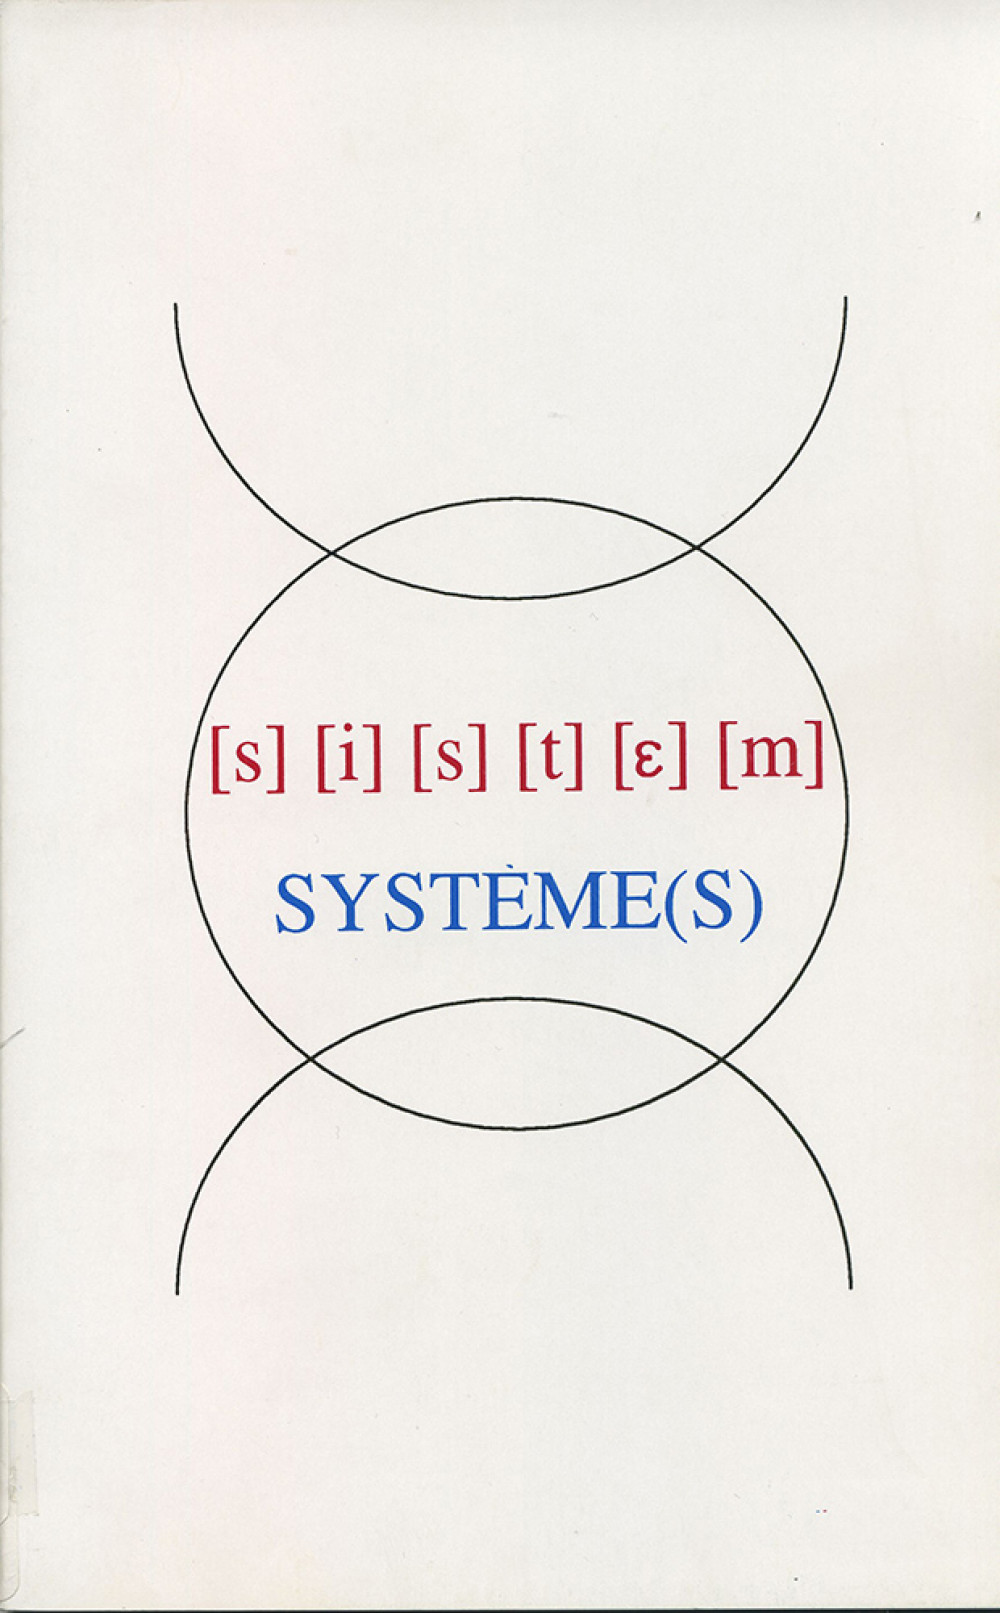 Système(s)